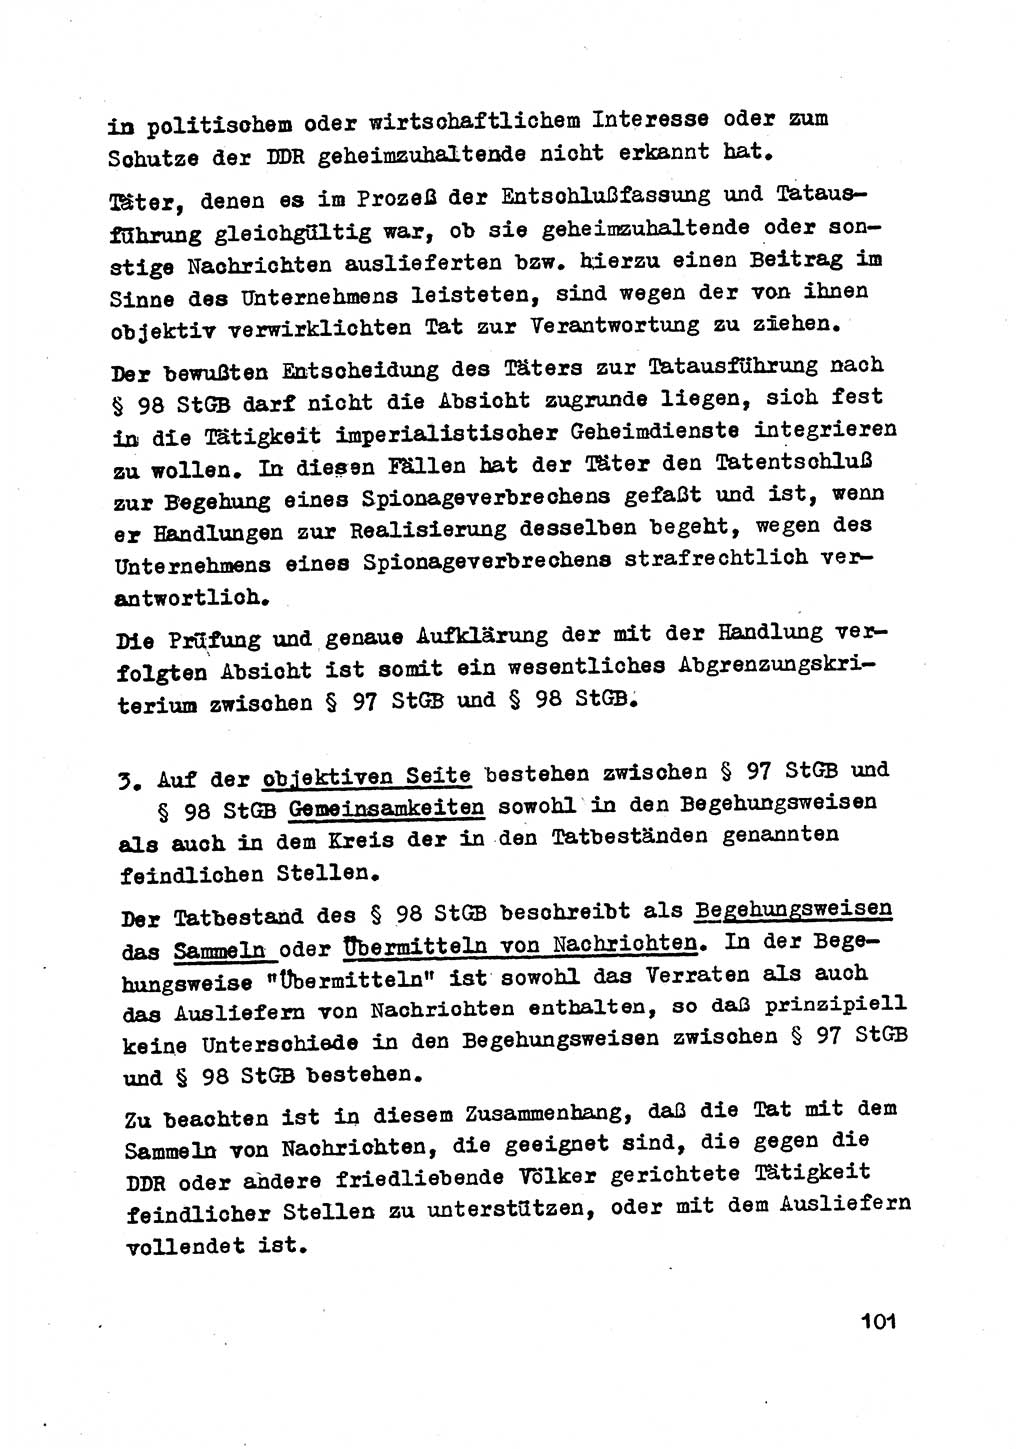 Strafrecht der DDR (Deutsche Demokratische Republik), Besonderer Teil, Lehrmaterial, Heft 2 1969, Seite 101 (Strafr. DDR BT Lehrmat. H. 2 1969, S. 101)